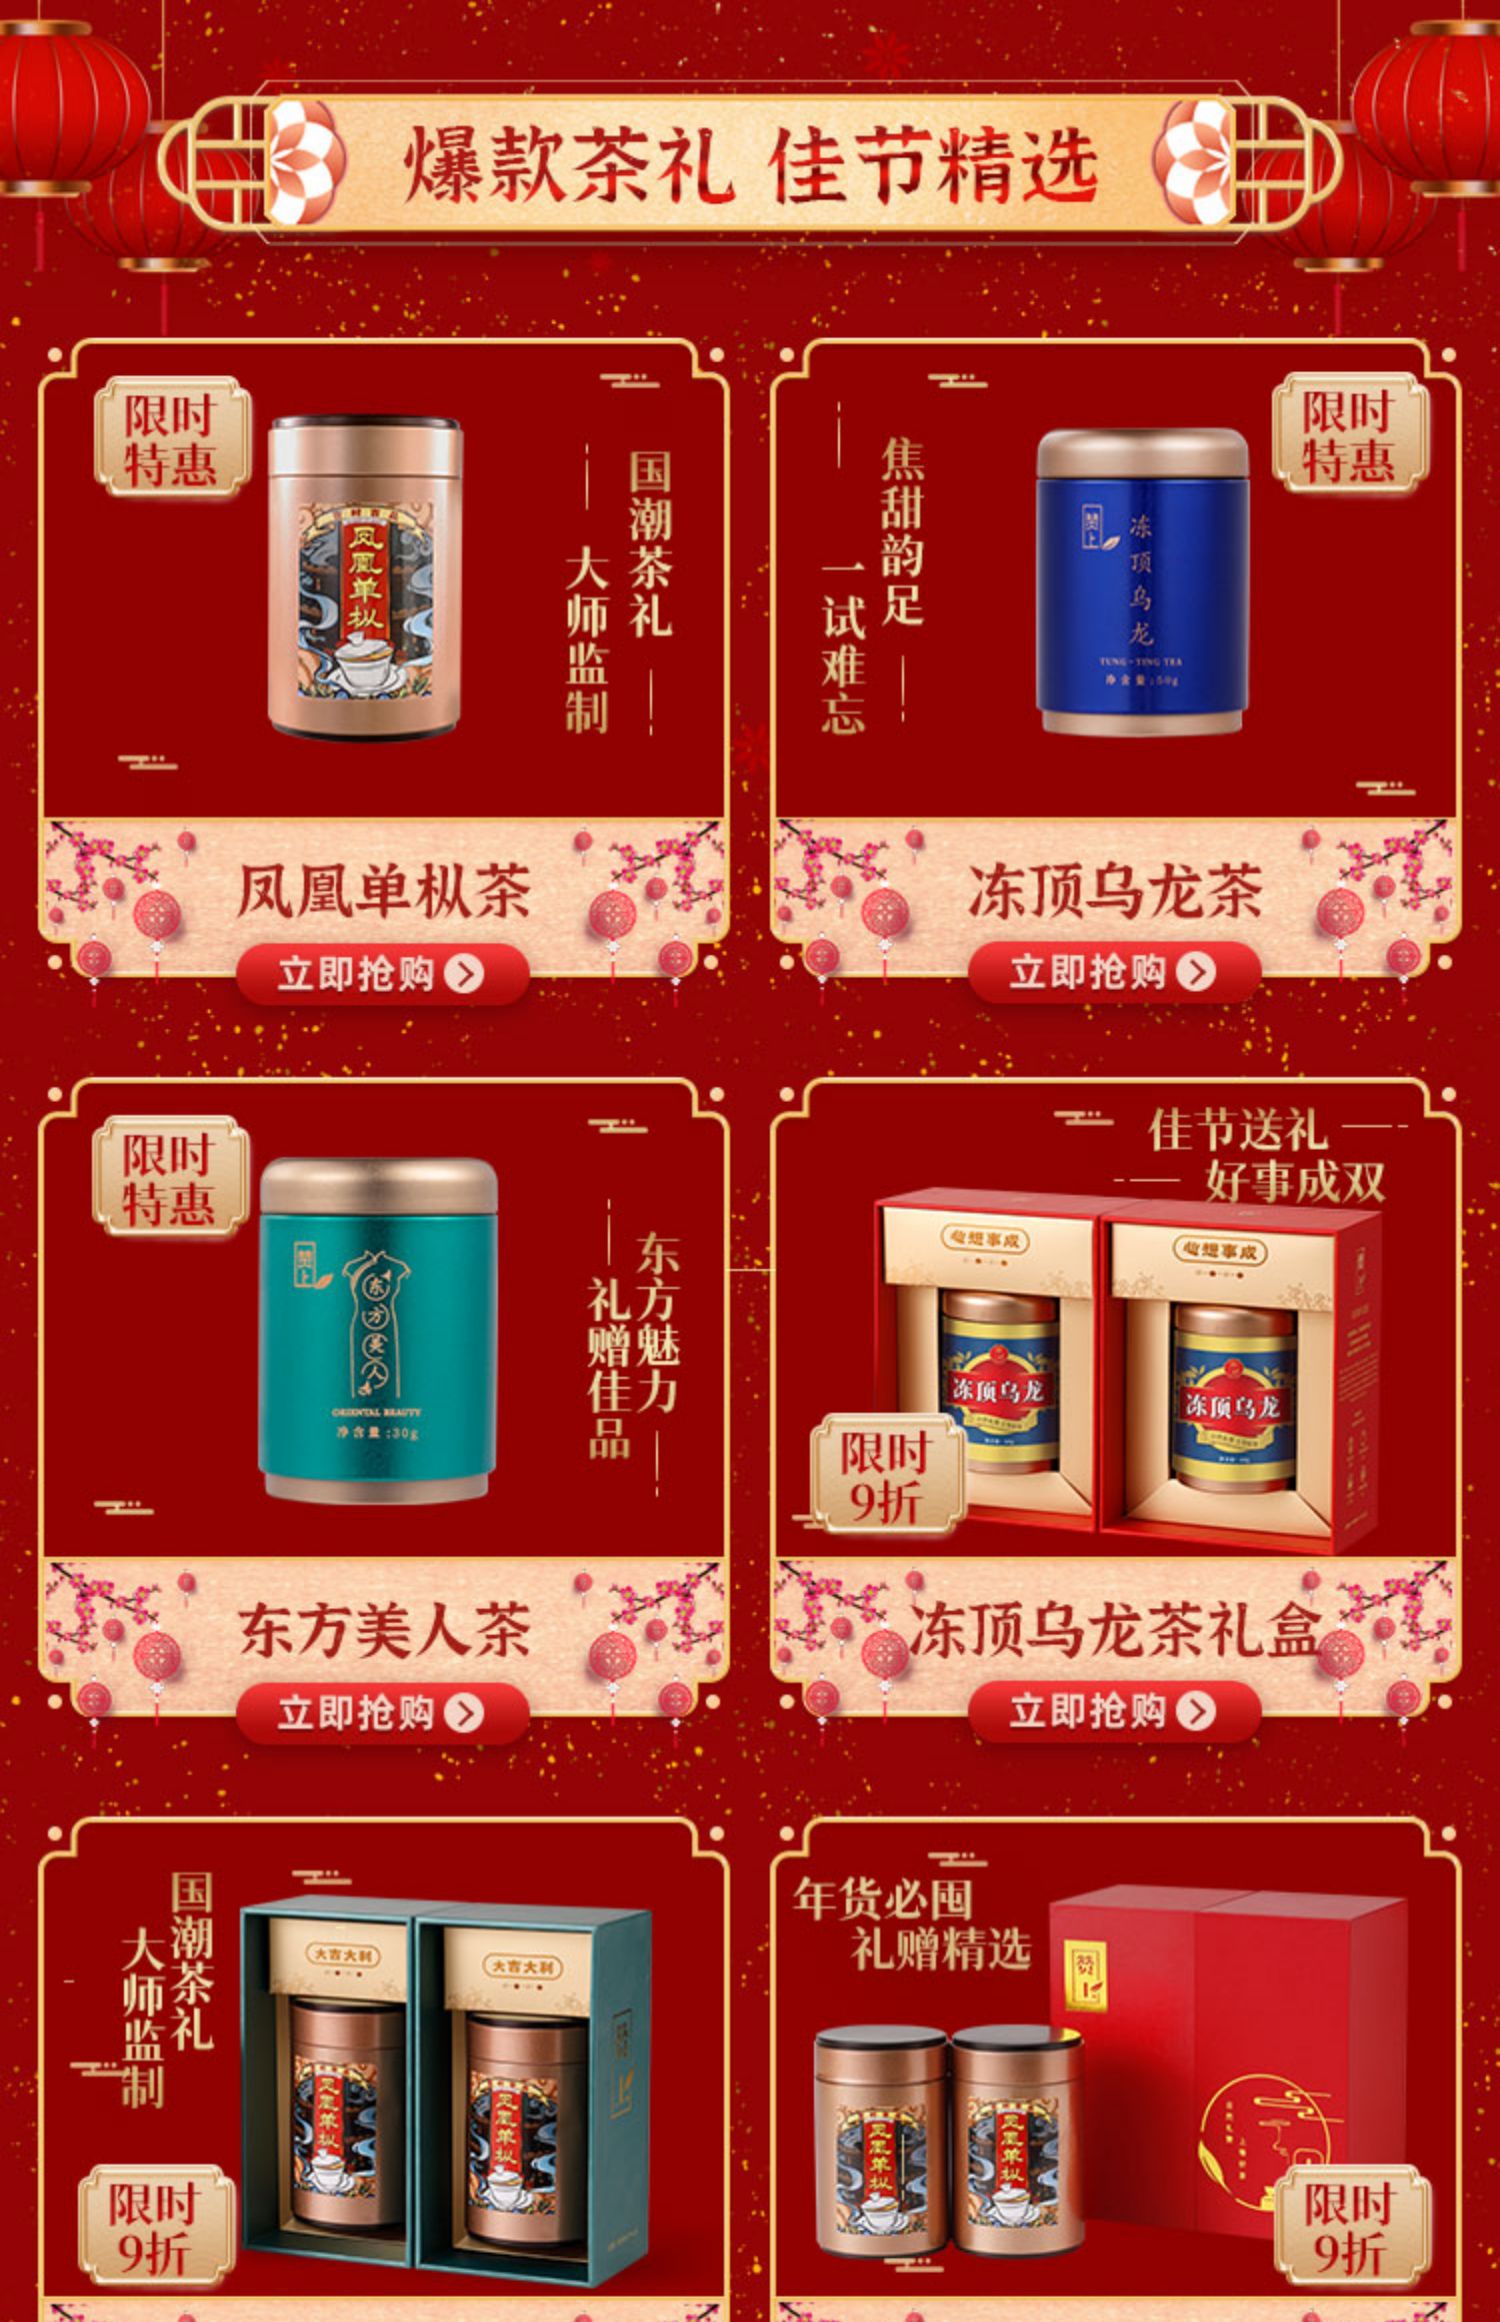 【赞上】冻顶乌龙茶台湾高山茶茶叶礼盒装